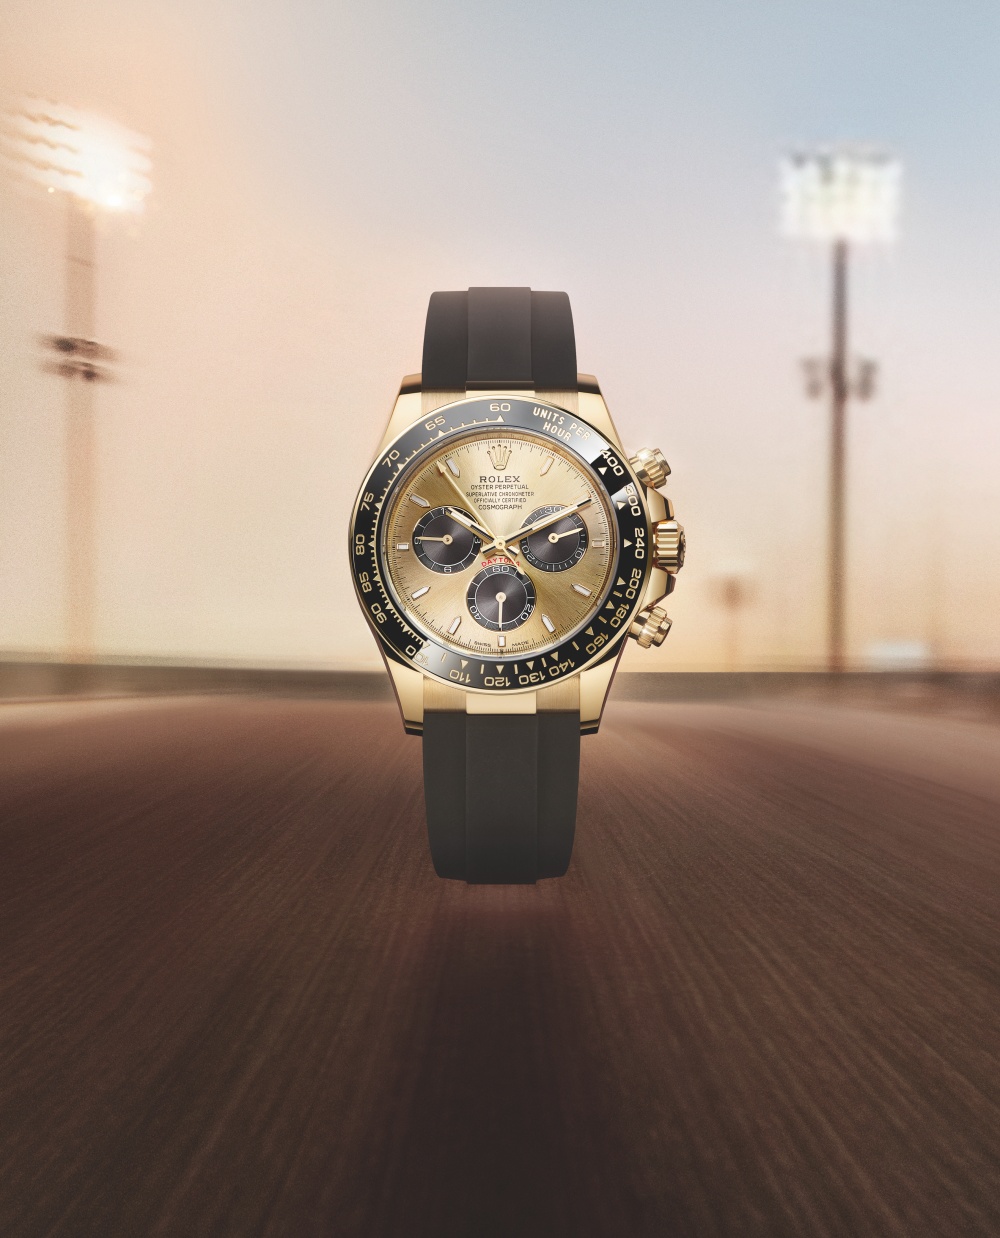 Đồng hồ Oyster Perpetual Cosmograph Daytona bằng vàng kim 18 ct với dây đeo Oysterflex